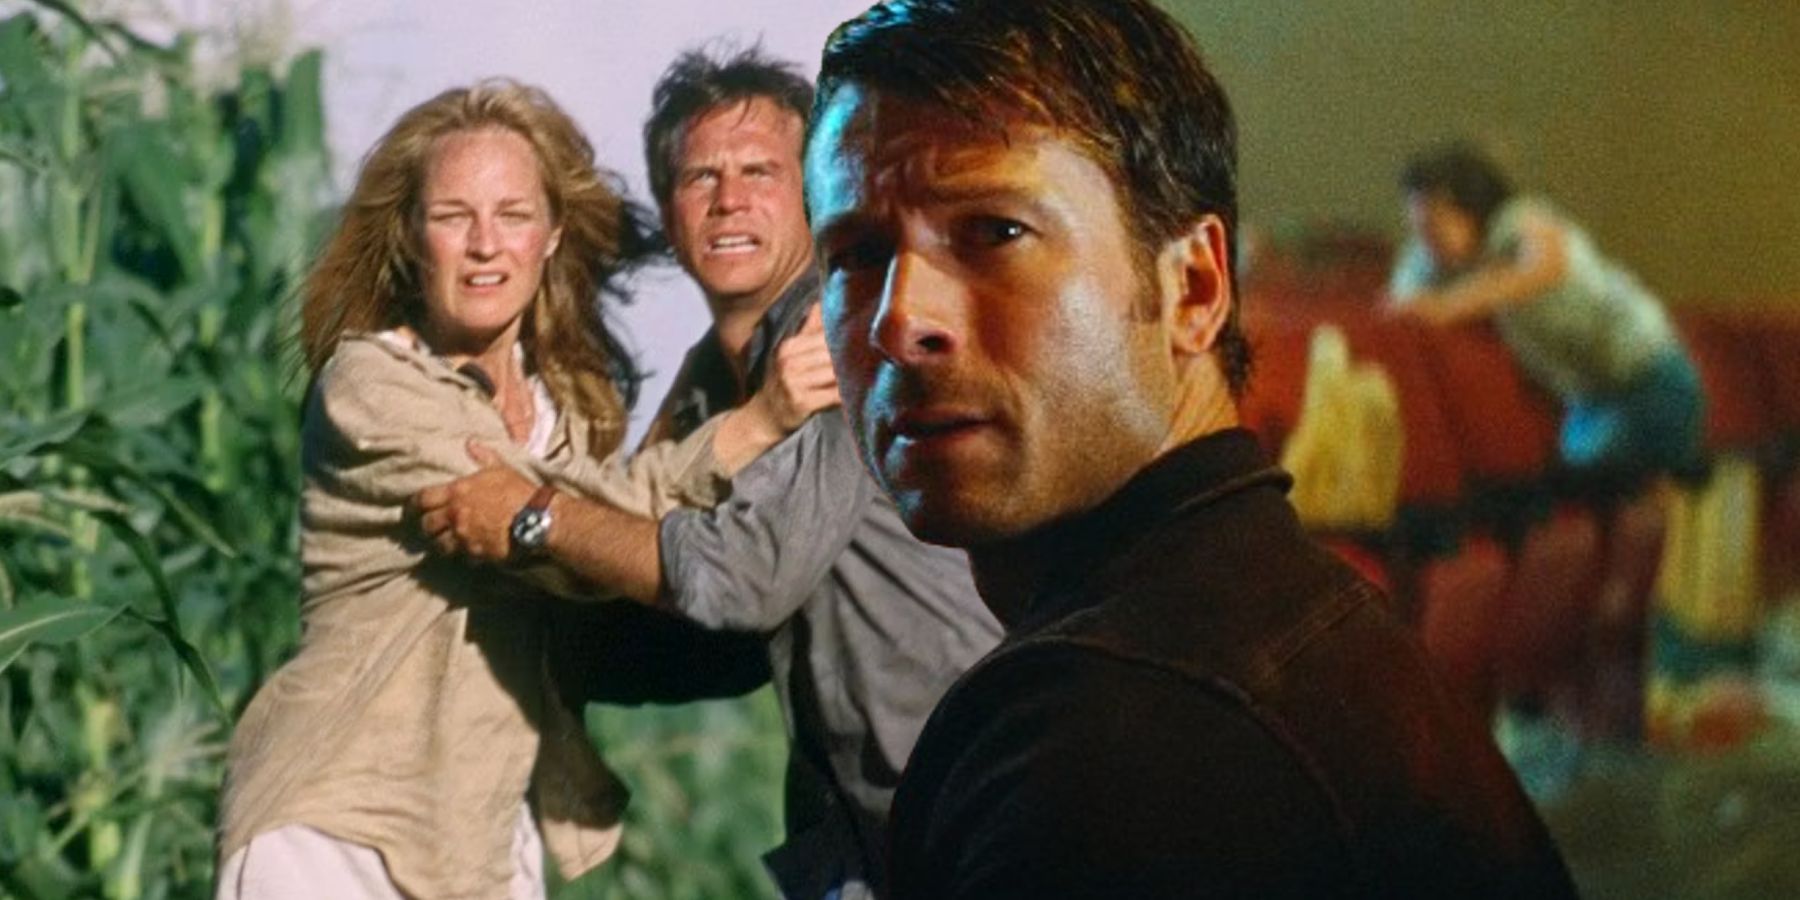 Por qué Twisters no reproducirá un detalle clave y famoso de la película original de desastres de 1996: "Te decepcionarías"